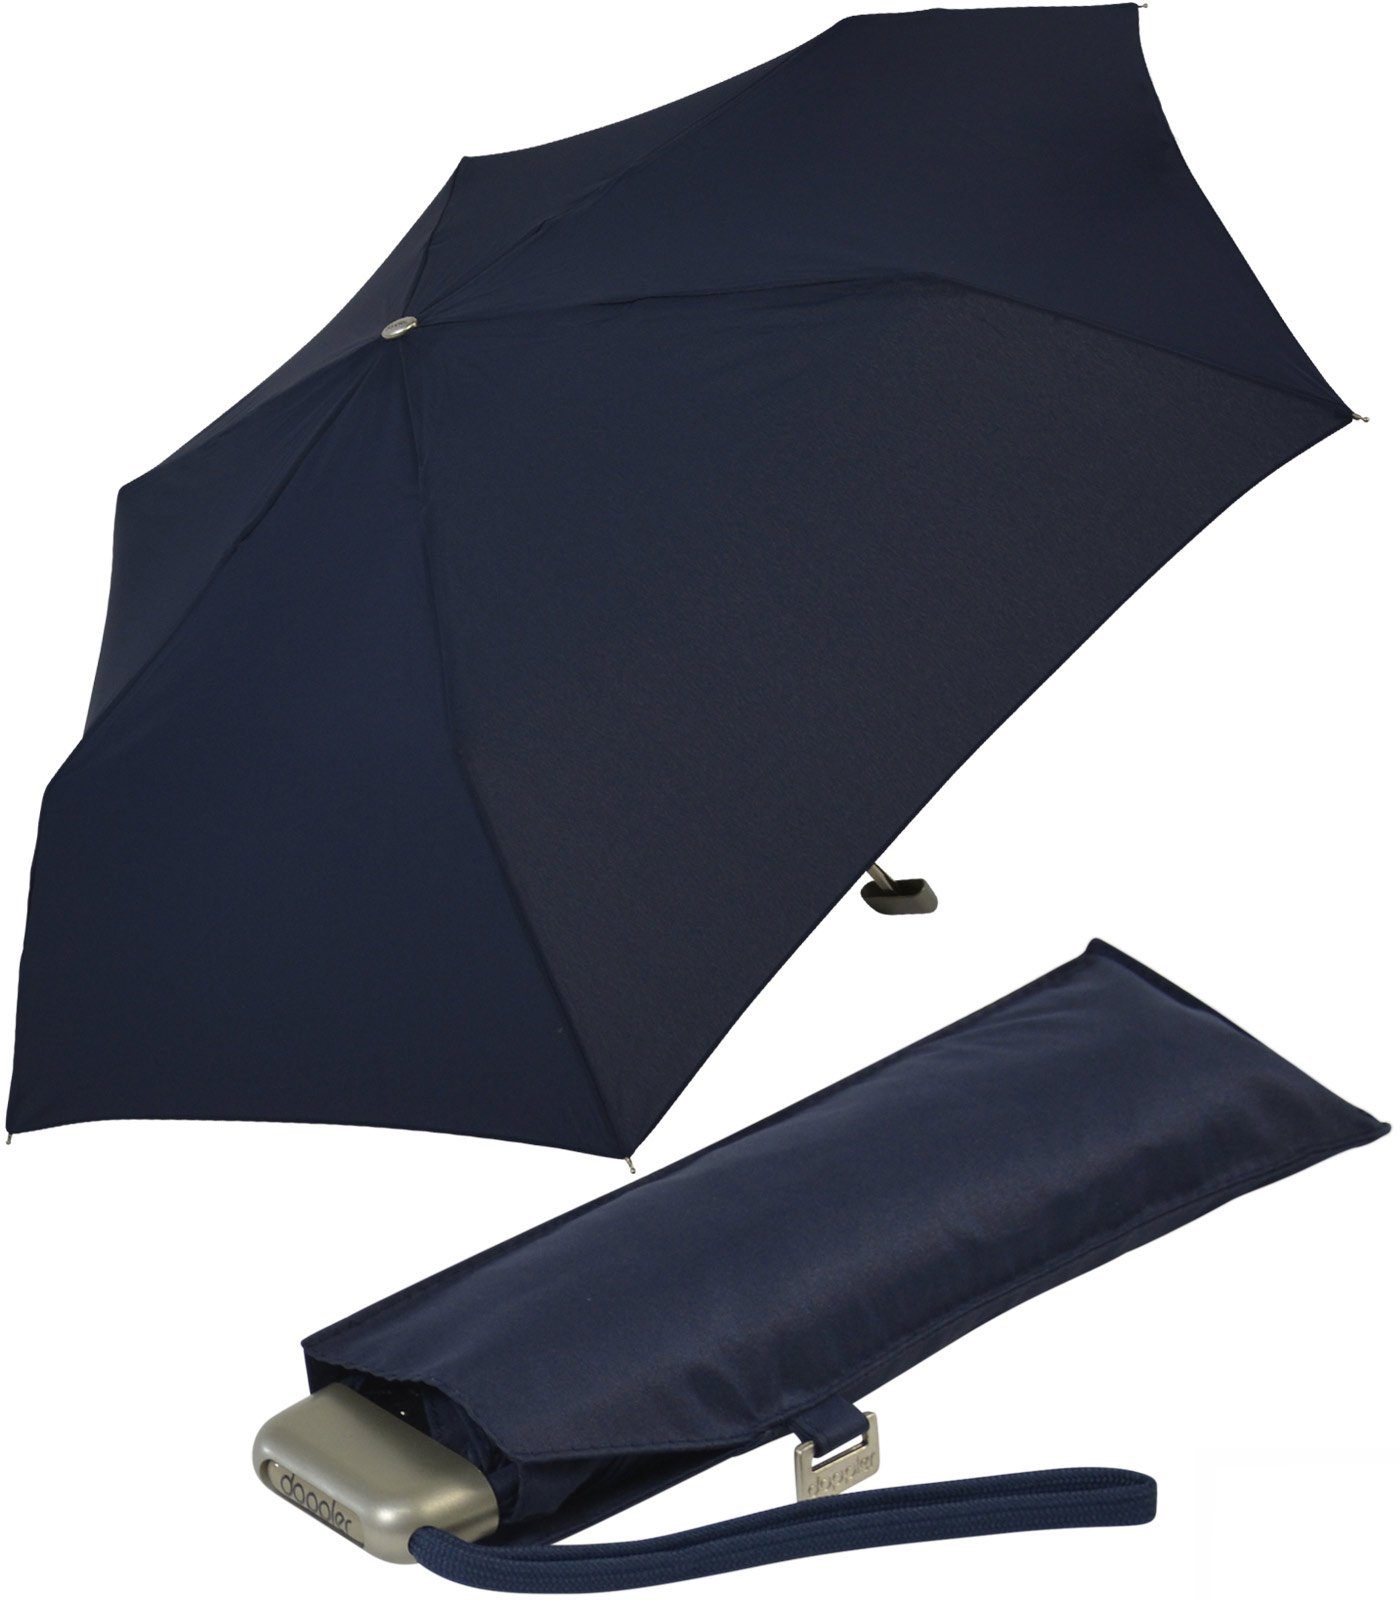 doppler® Langregenschirm ein leichter und flacher Schirm für jede Tasche, dieser treue Begleiter findet überall Platz navy